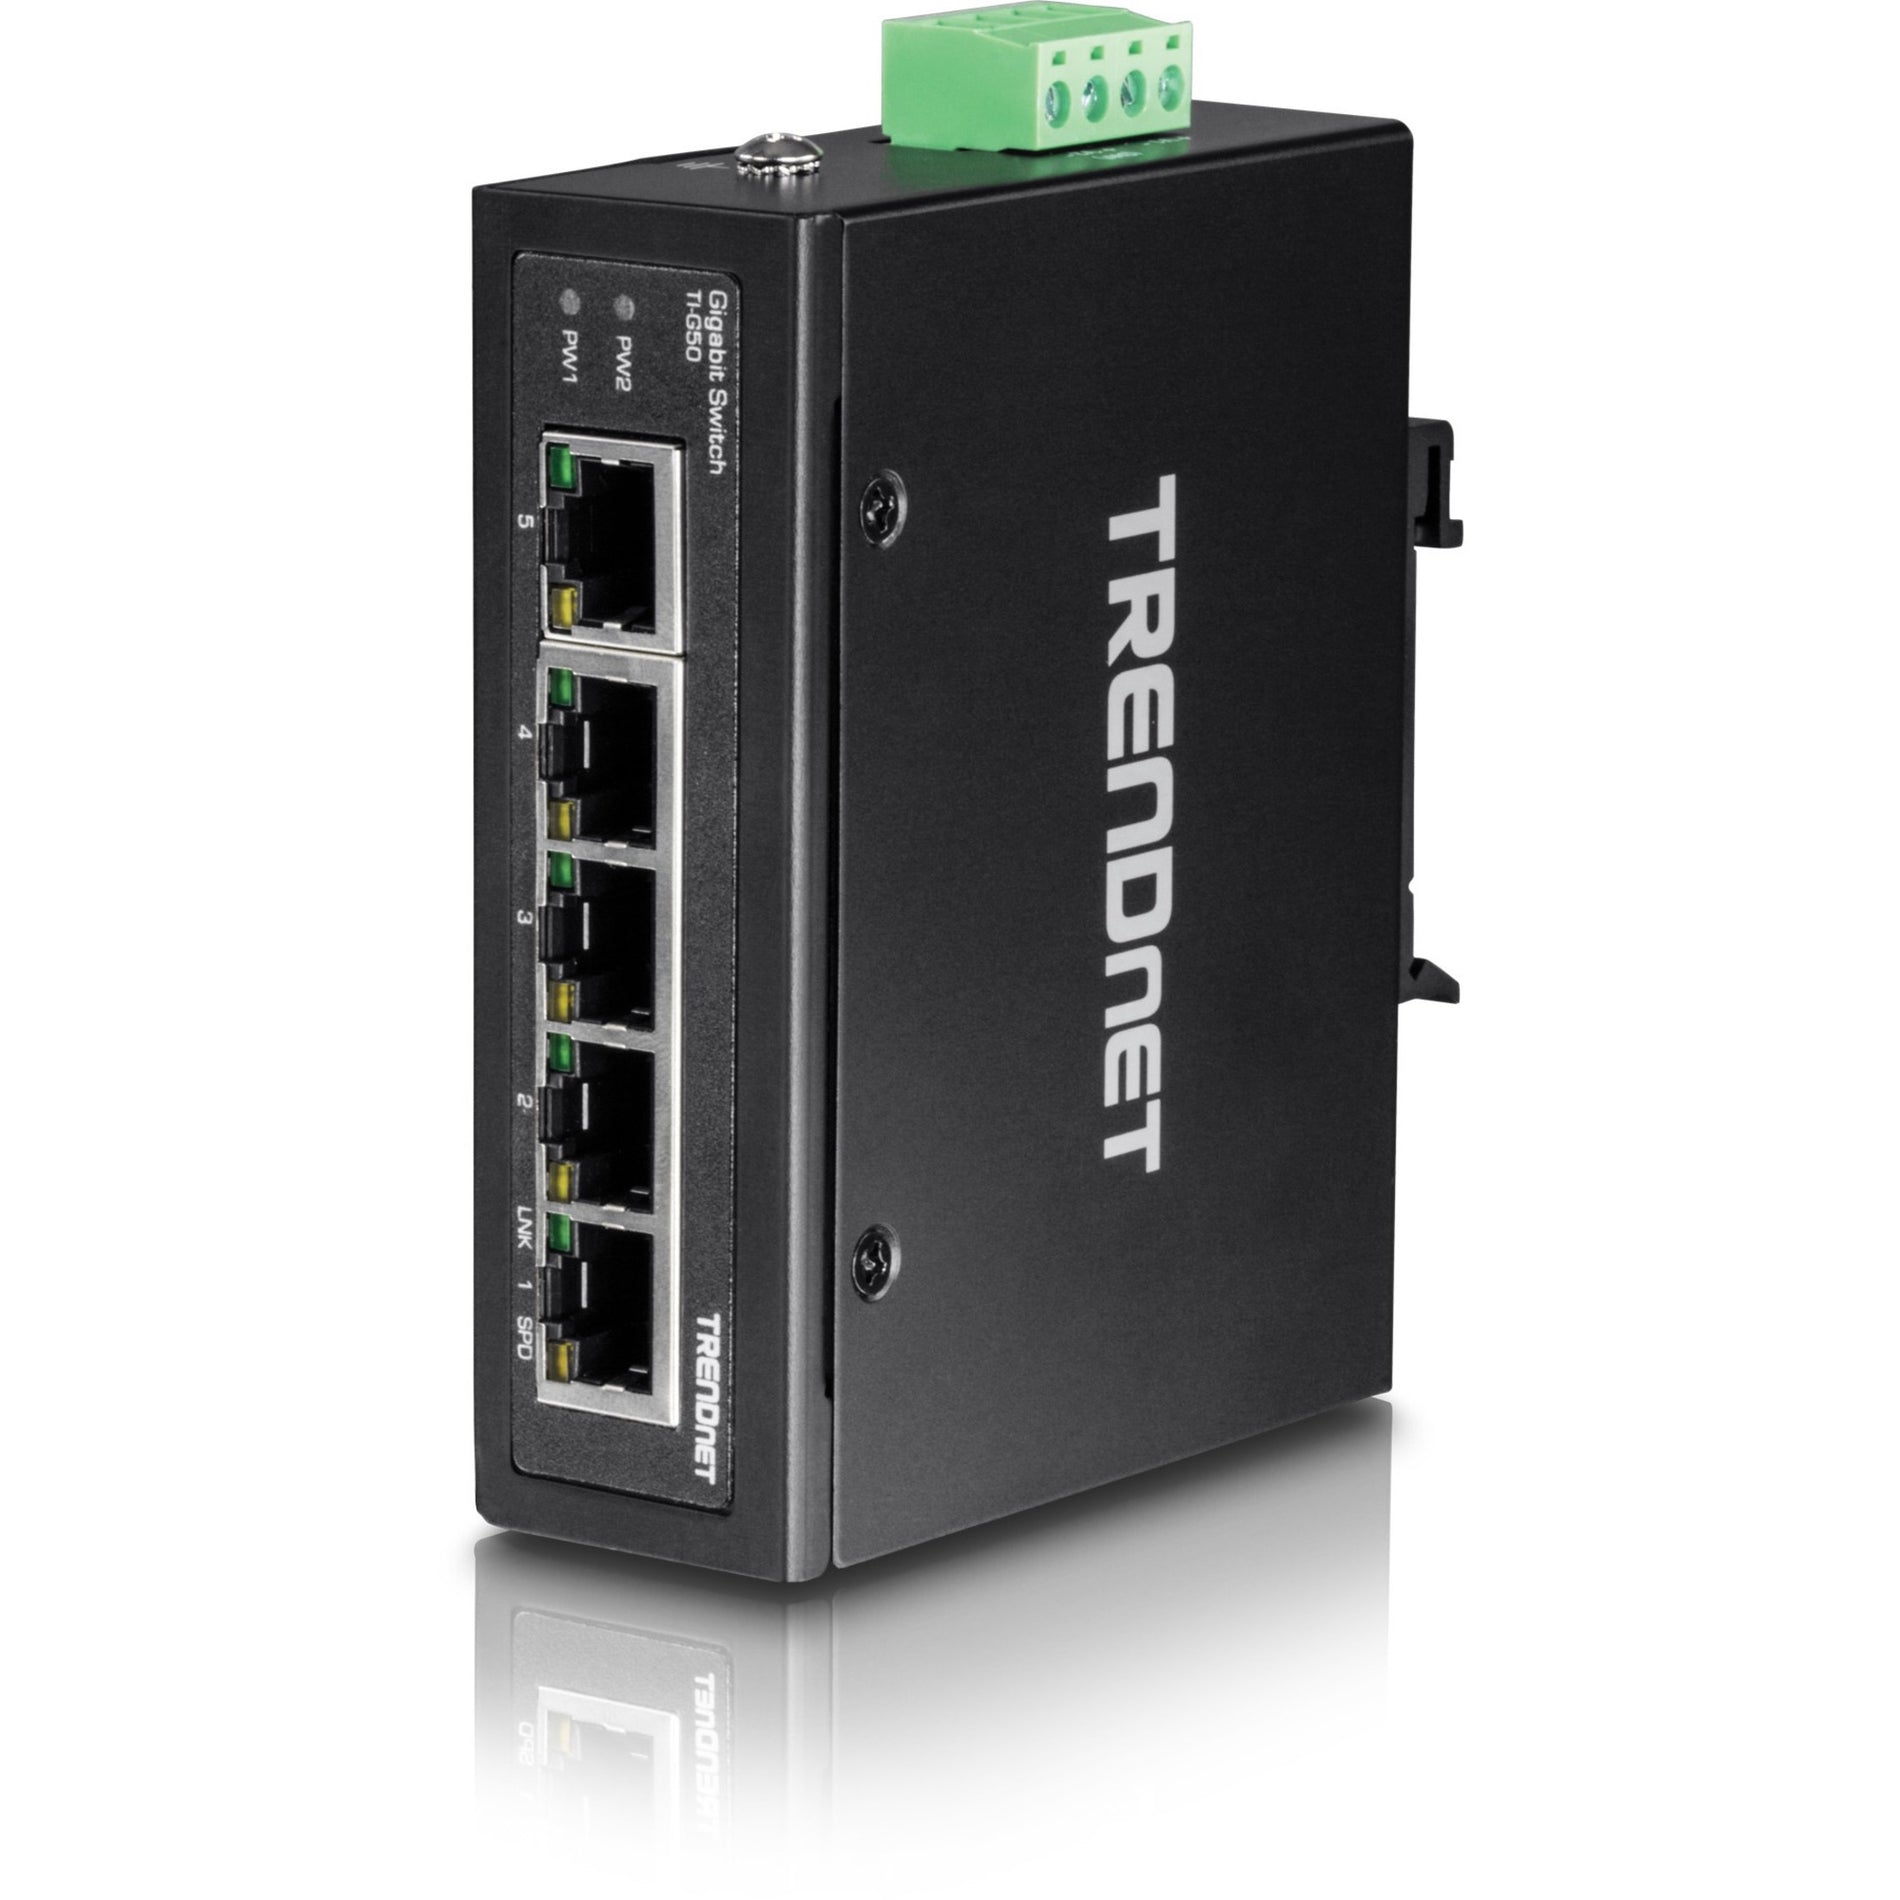 TRENDnet TI-G50 Commutateur industriel Gigabit durci à 5 ports Capacité de commutation de 10 Gbps Commutateur réseau classé IP30 (-40 à 167 ?F) Montages DIN-Rail et muraux inclus Protection à vie Noir